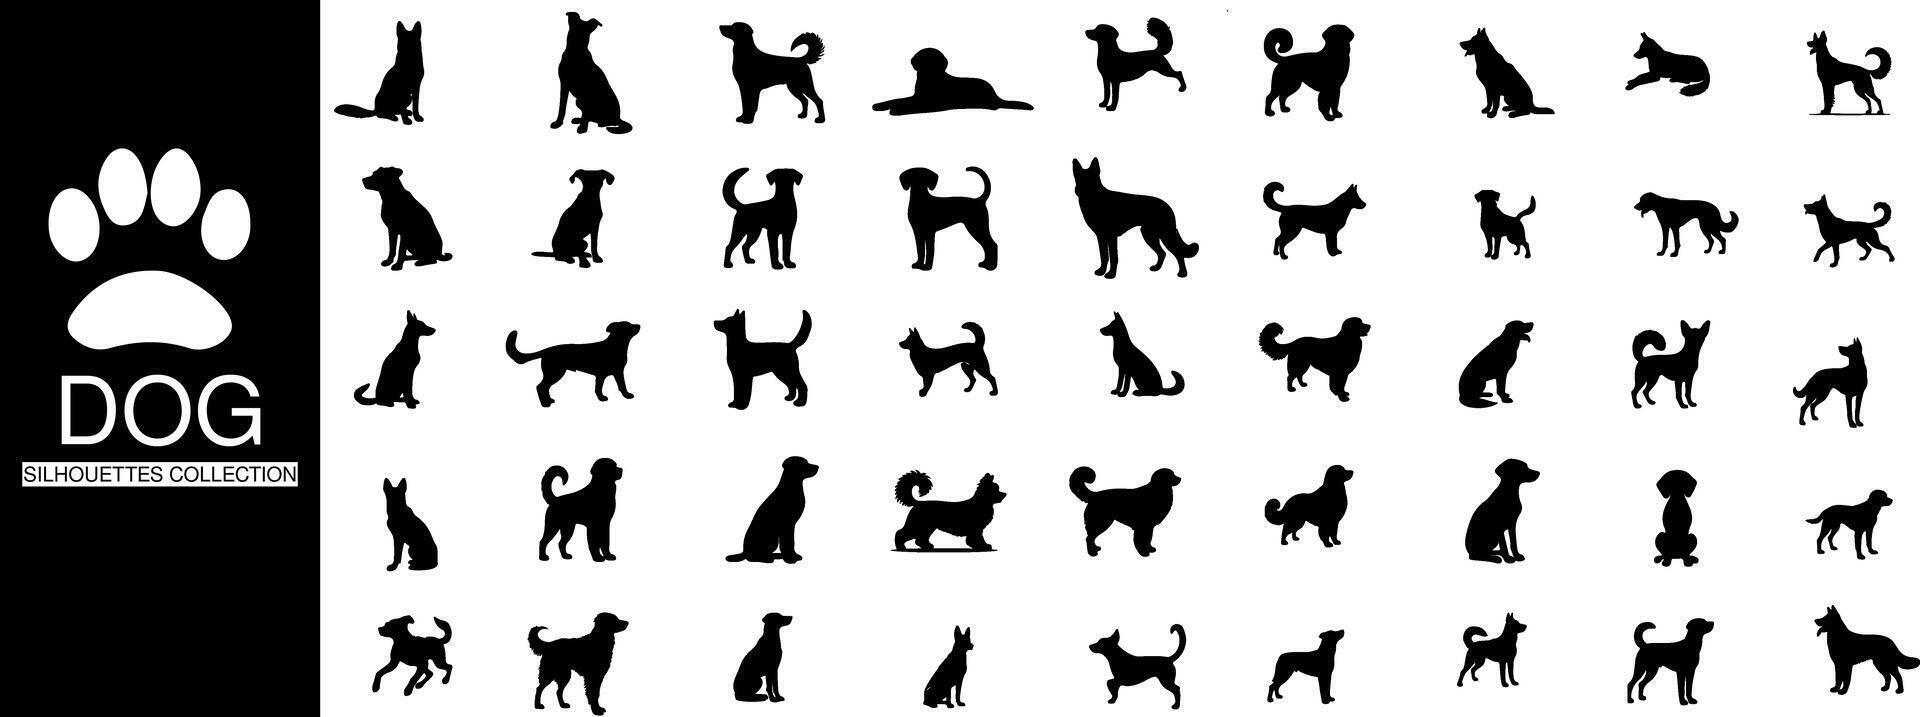 samling av hund silhuetter, fånga de väsen och mångfald av olika poser i en minimalistisk stil vektor